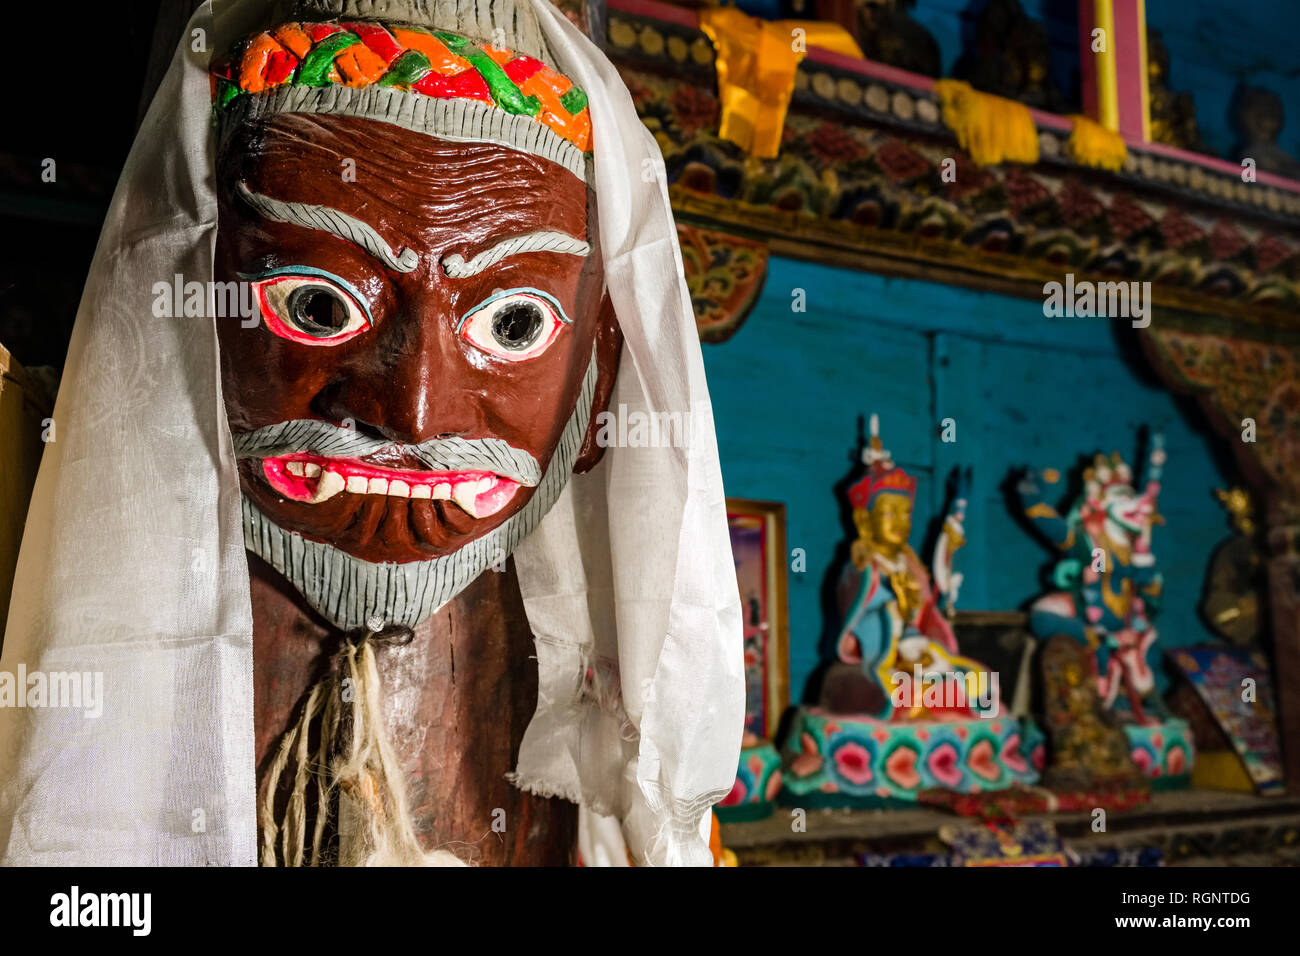 Una máscara budista pintado de colores vivos para danzas rituales de Braga el monasterio local Fotografía de stock Alamy